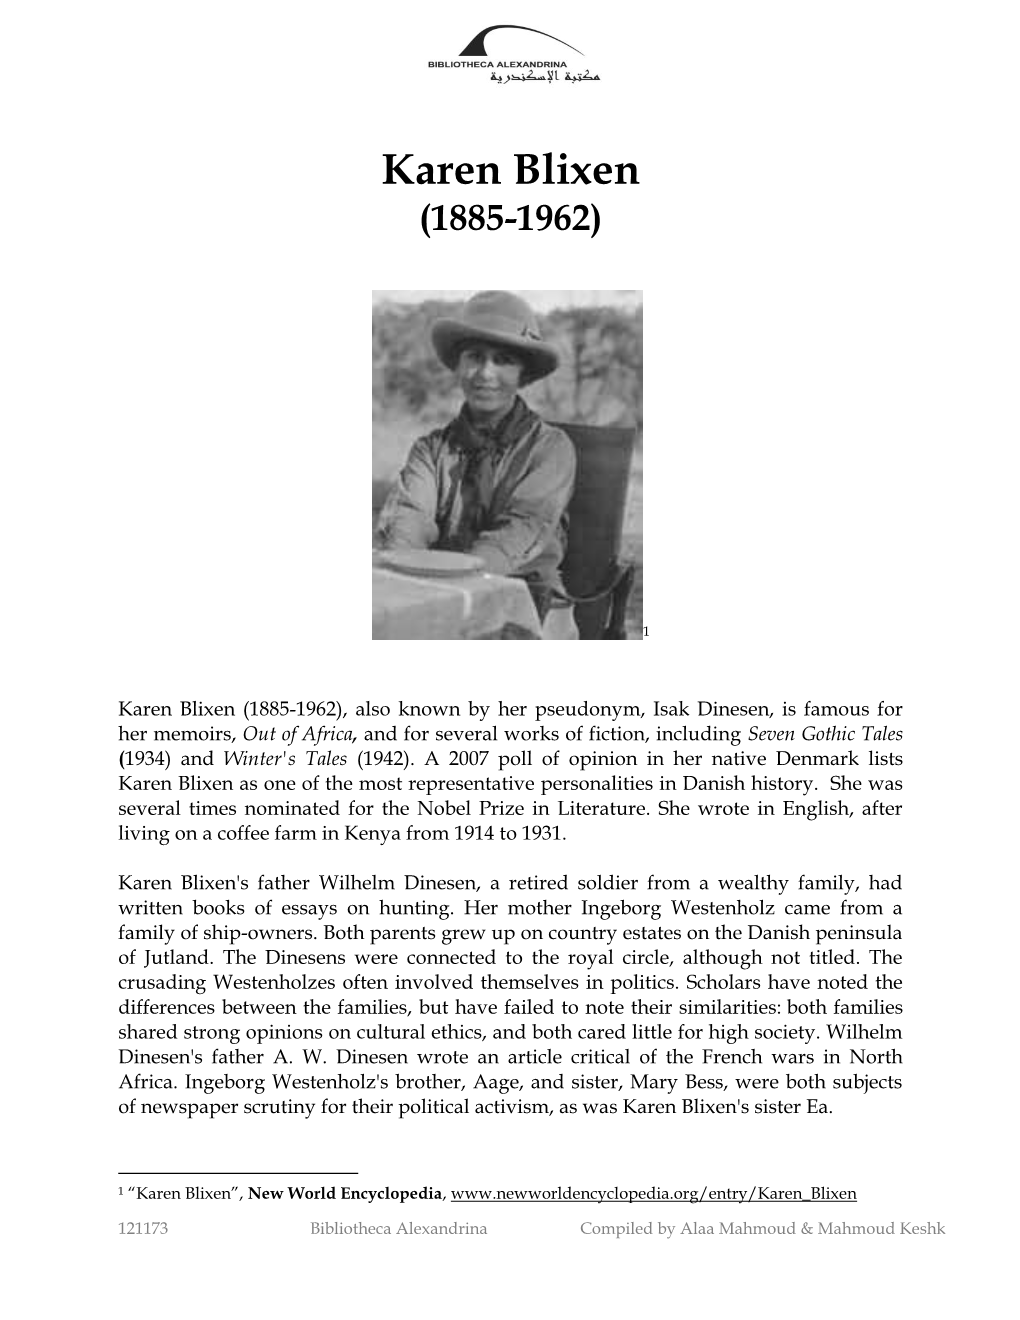 Karen Blixen (1885-1962)